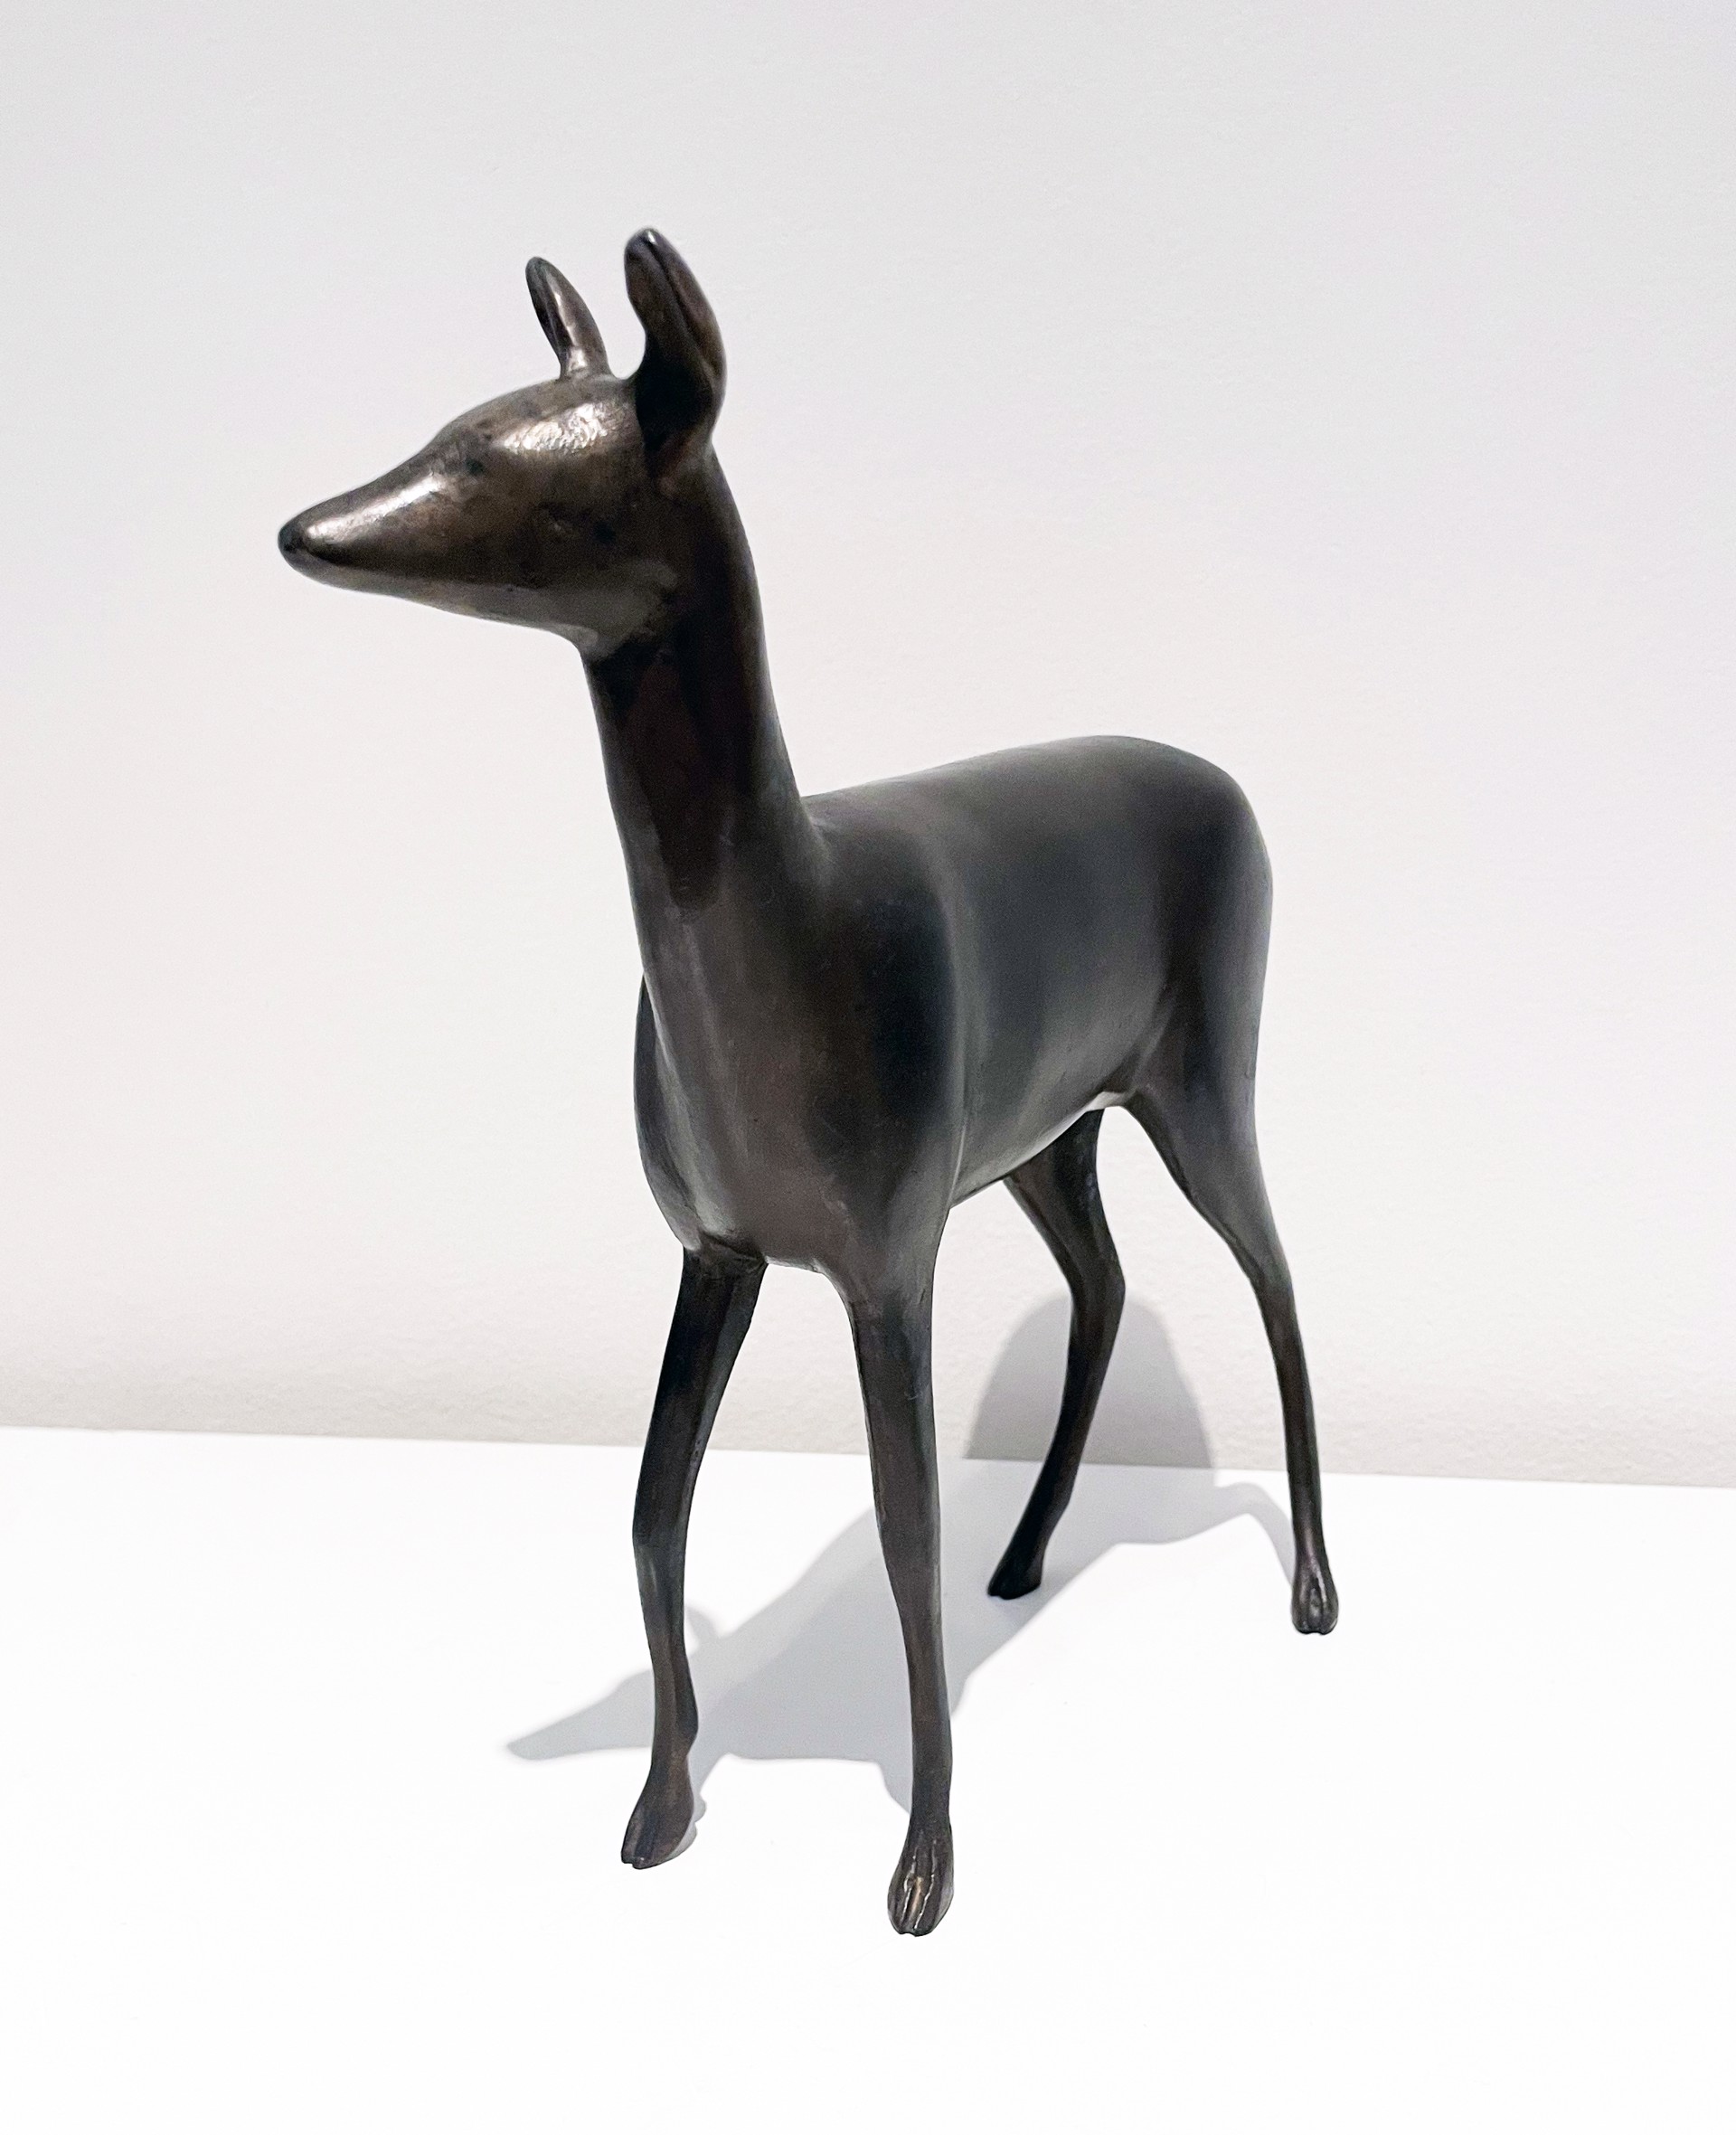 Deer 1 Maquette by Gwynn Murrill